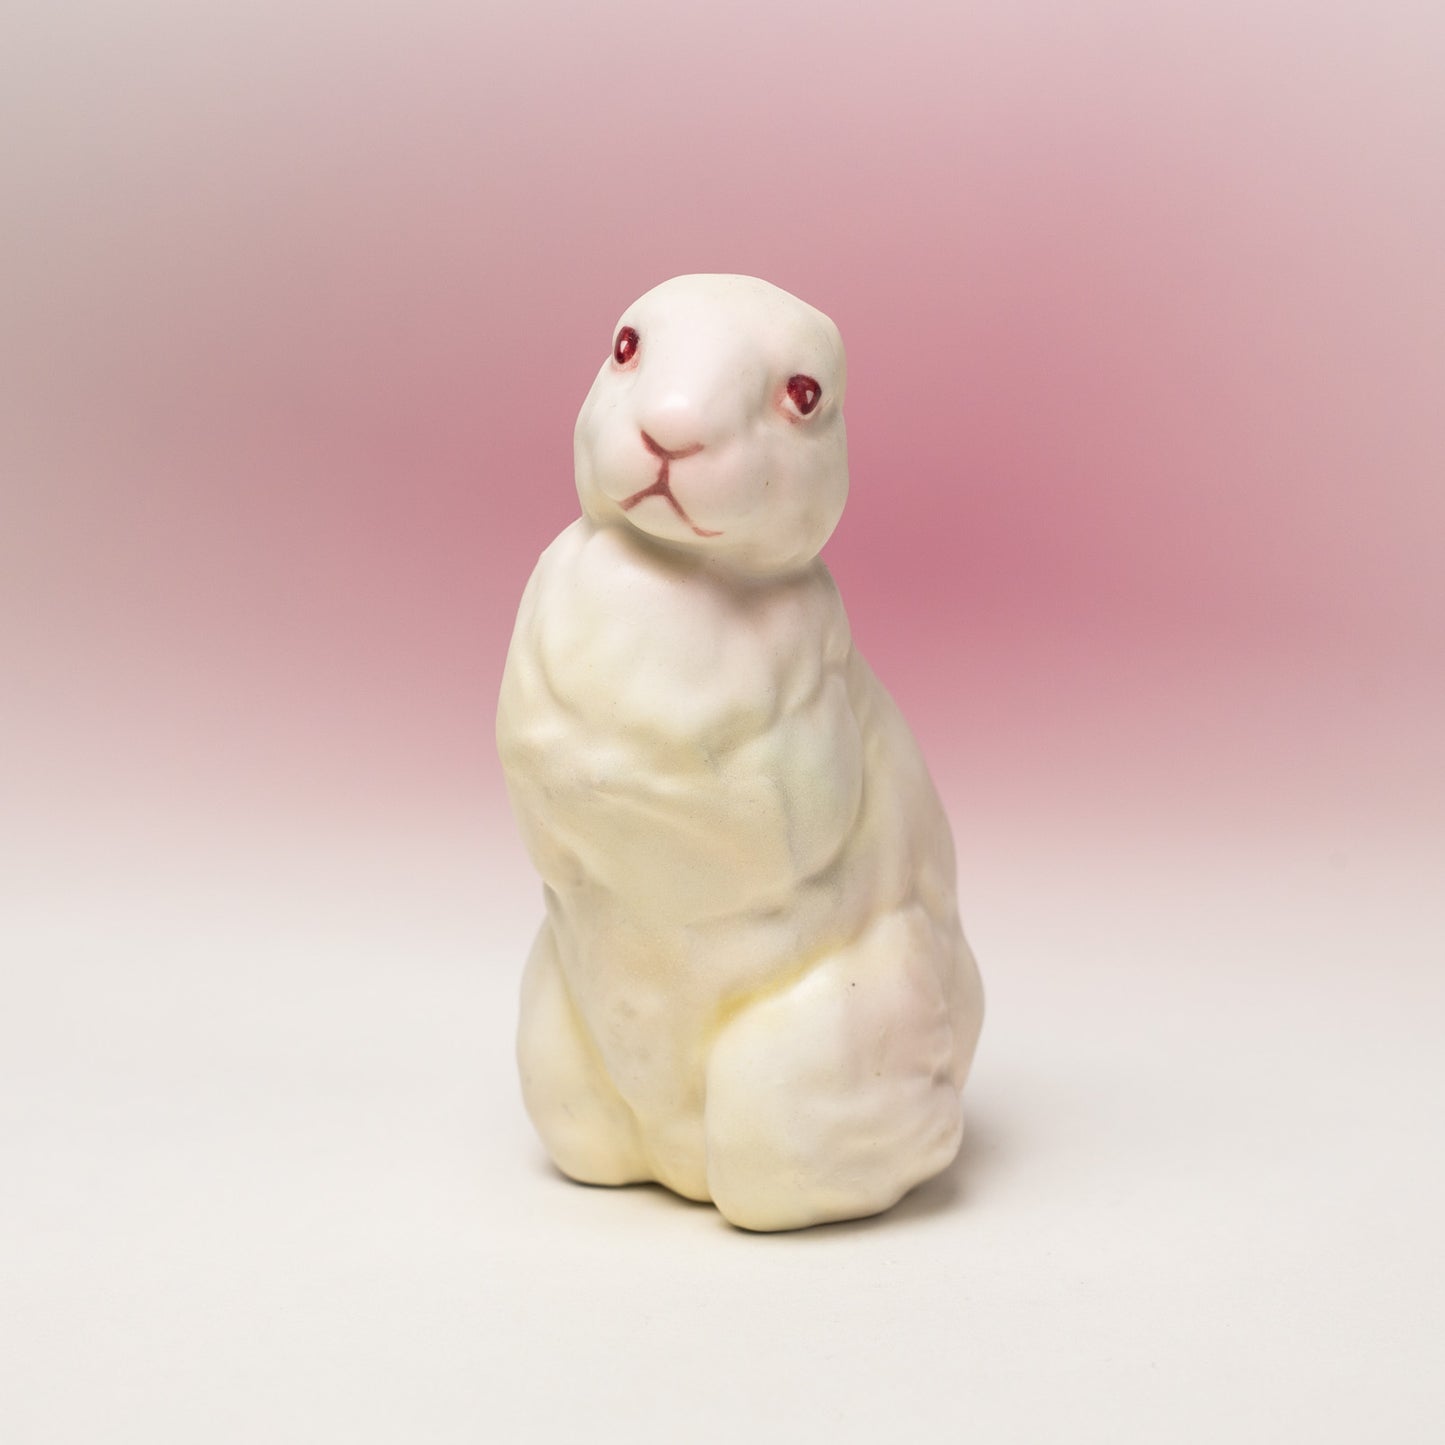 Debra Broz – White Rabbit, No. 25, 2019